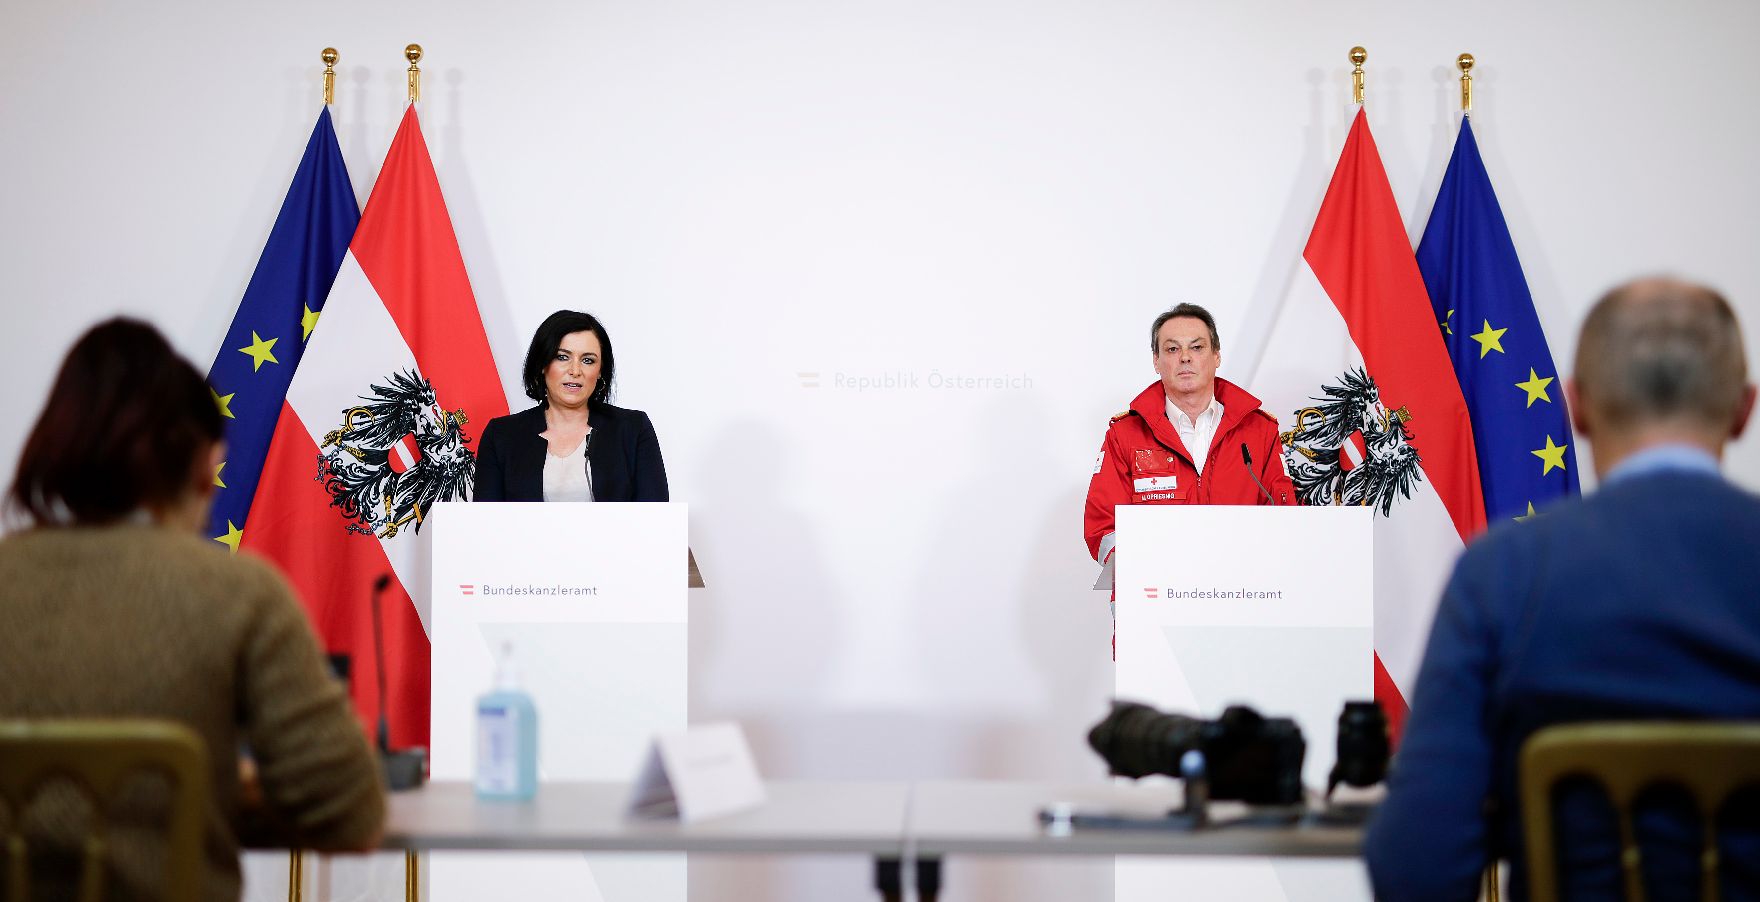 Am 21. März 2020 fand ein Pressestatement zu den Maßnahmen gegen die Krise im Bundeskanzleramt statt. Im Bild Bundesministerin Elisabeth Köstinger (l.) mit dem Rotes Kreuz-Generalsekretär Michael Opriesnig (r.).